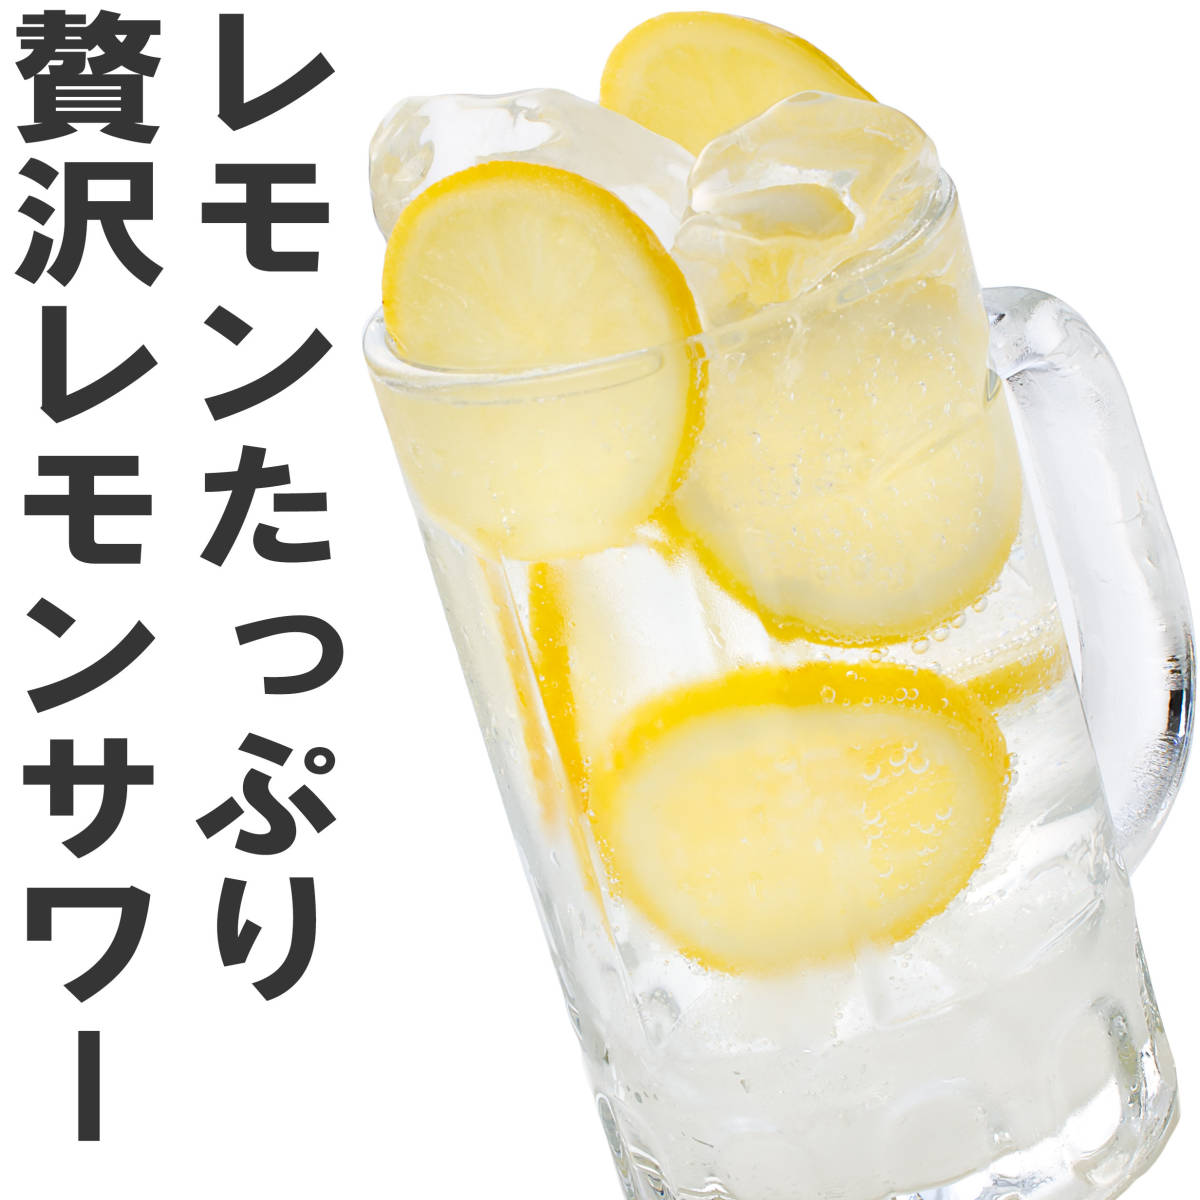 冷凍レモン スライス 500g×2パック 合計1kg 輪切り カット済み レモン スライス レモンサワー レモネード はちみつレモン_画像3